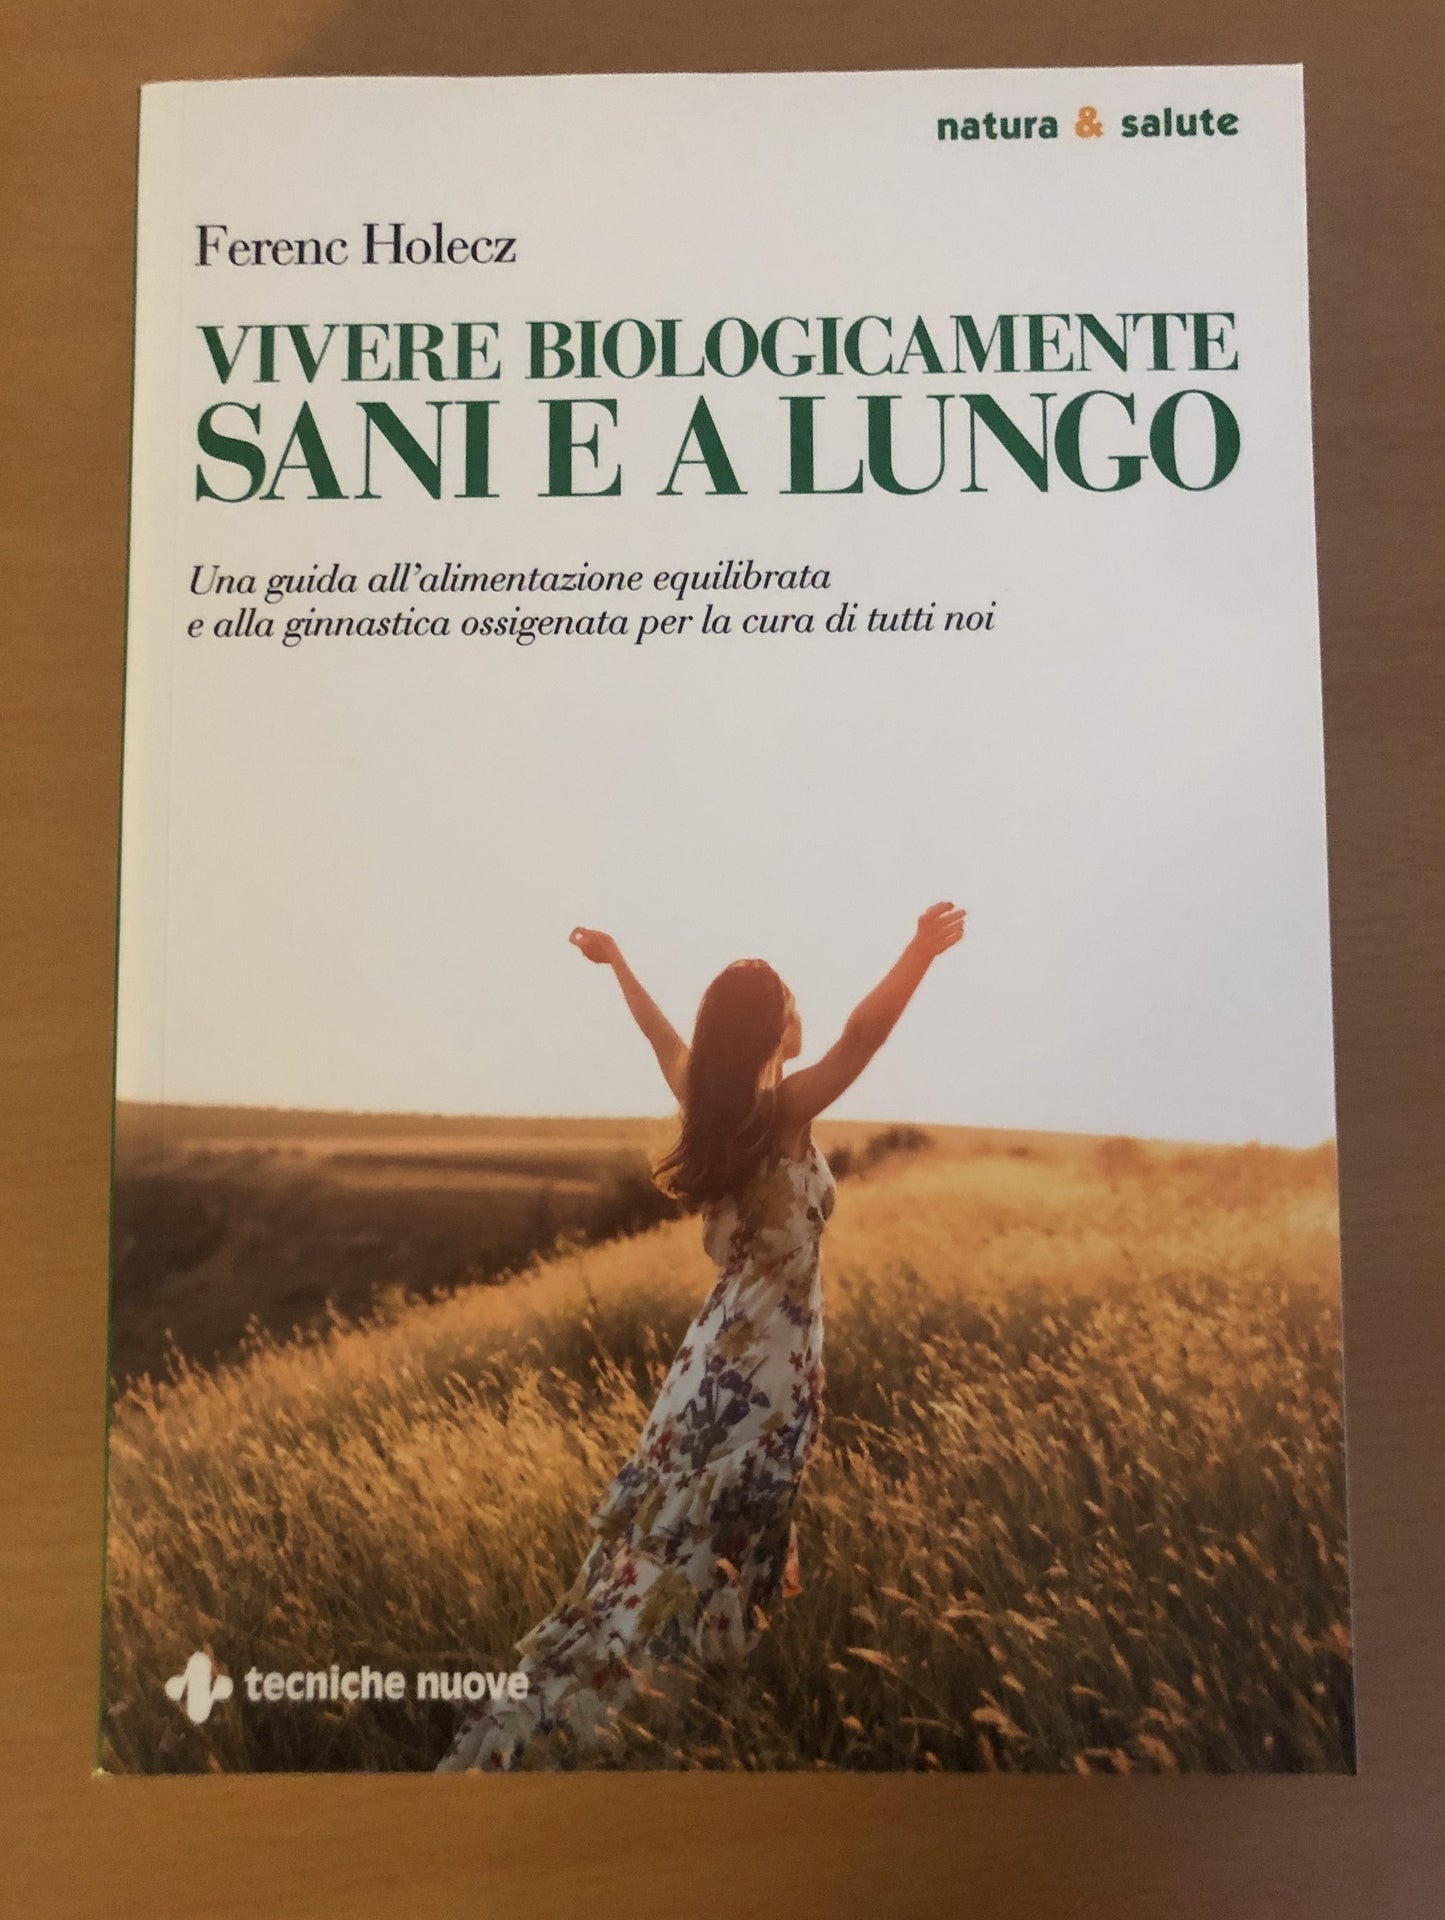 Libro "Vivere biologicamente sani e a lungo" (Macrocosmo)